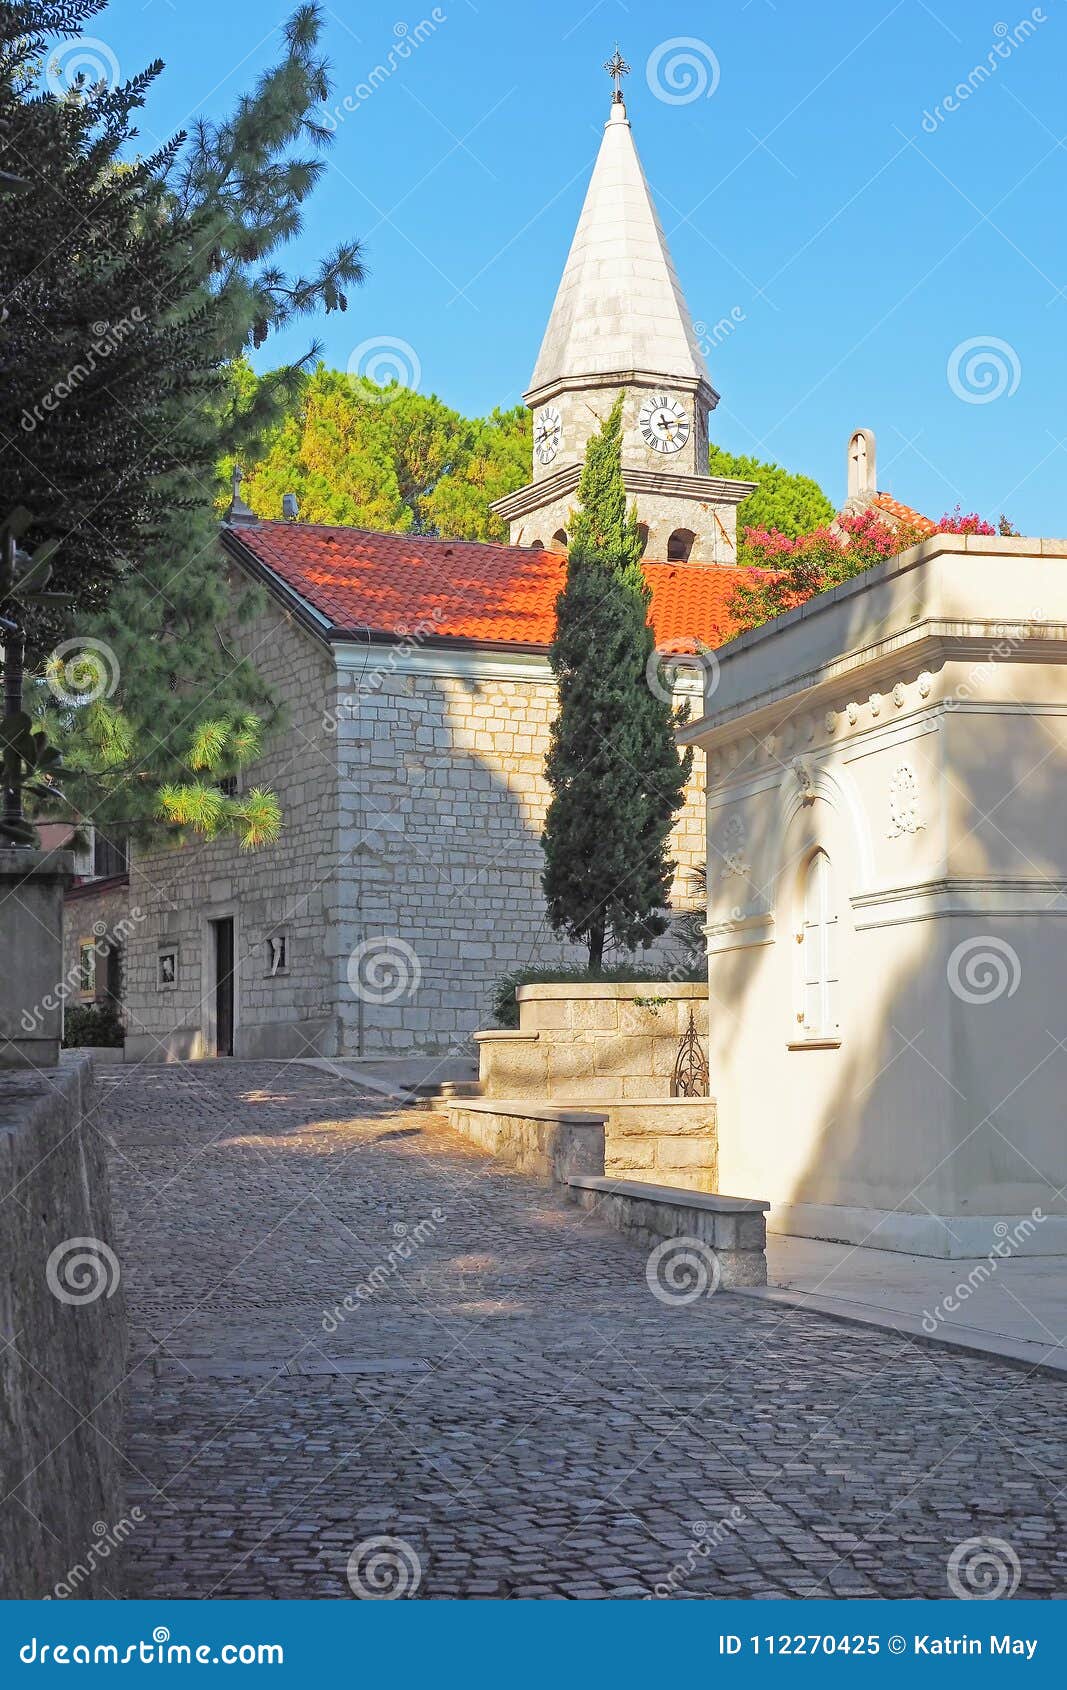 church of st. jacobs in opatija, croatia